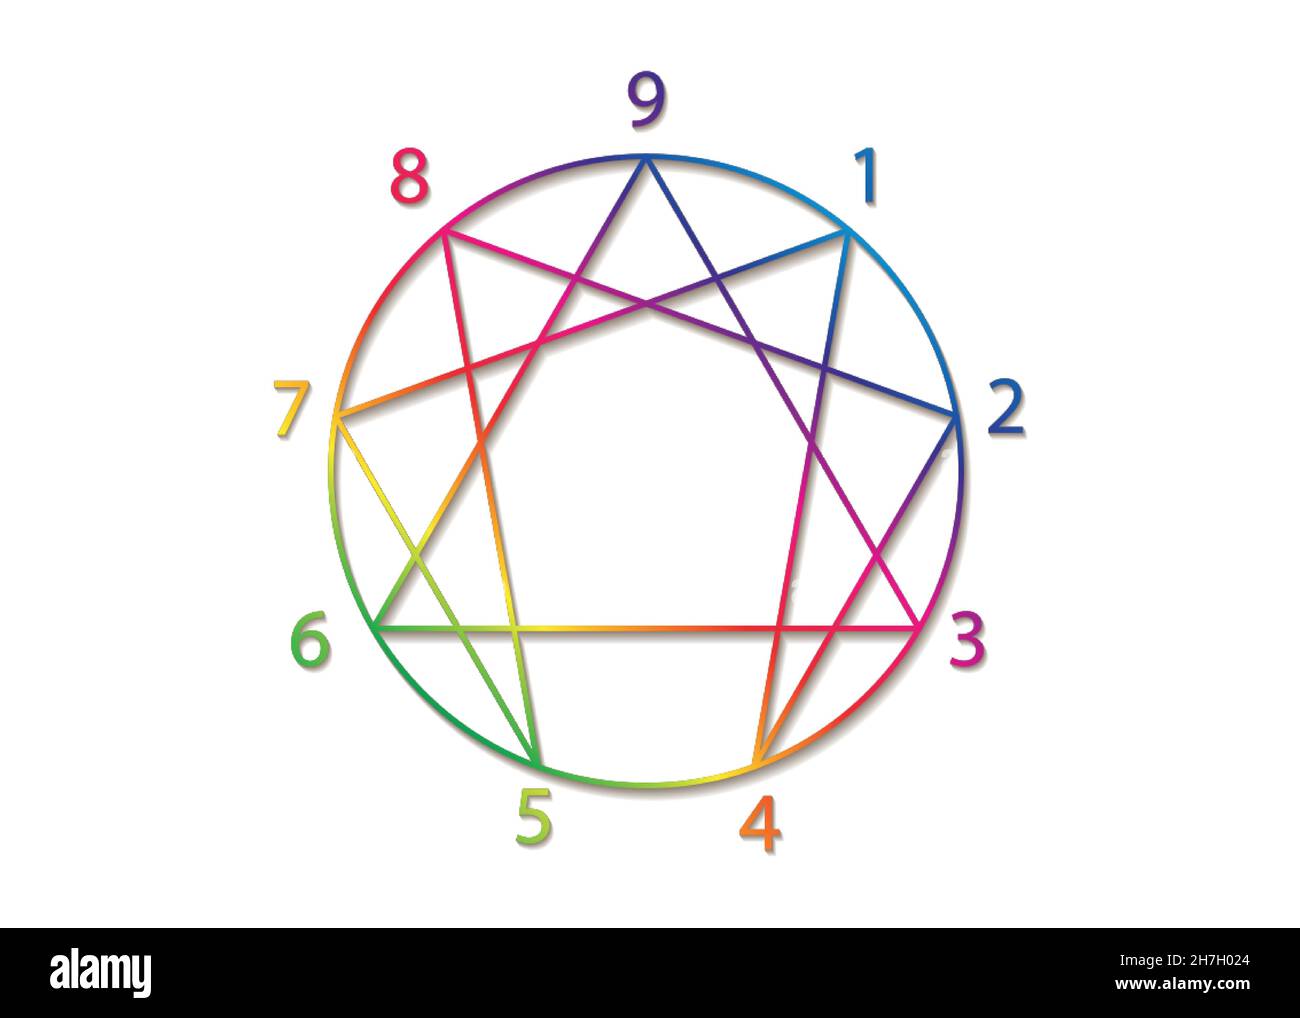 Enneagram icône, géométrie sacrée, diagramme coloré dégradé logo modèle, avec des nombres de un à neuf concernant les neuf types de personnalité, signe Illustration de Vecteur